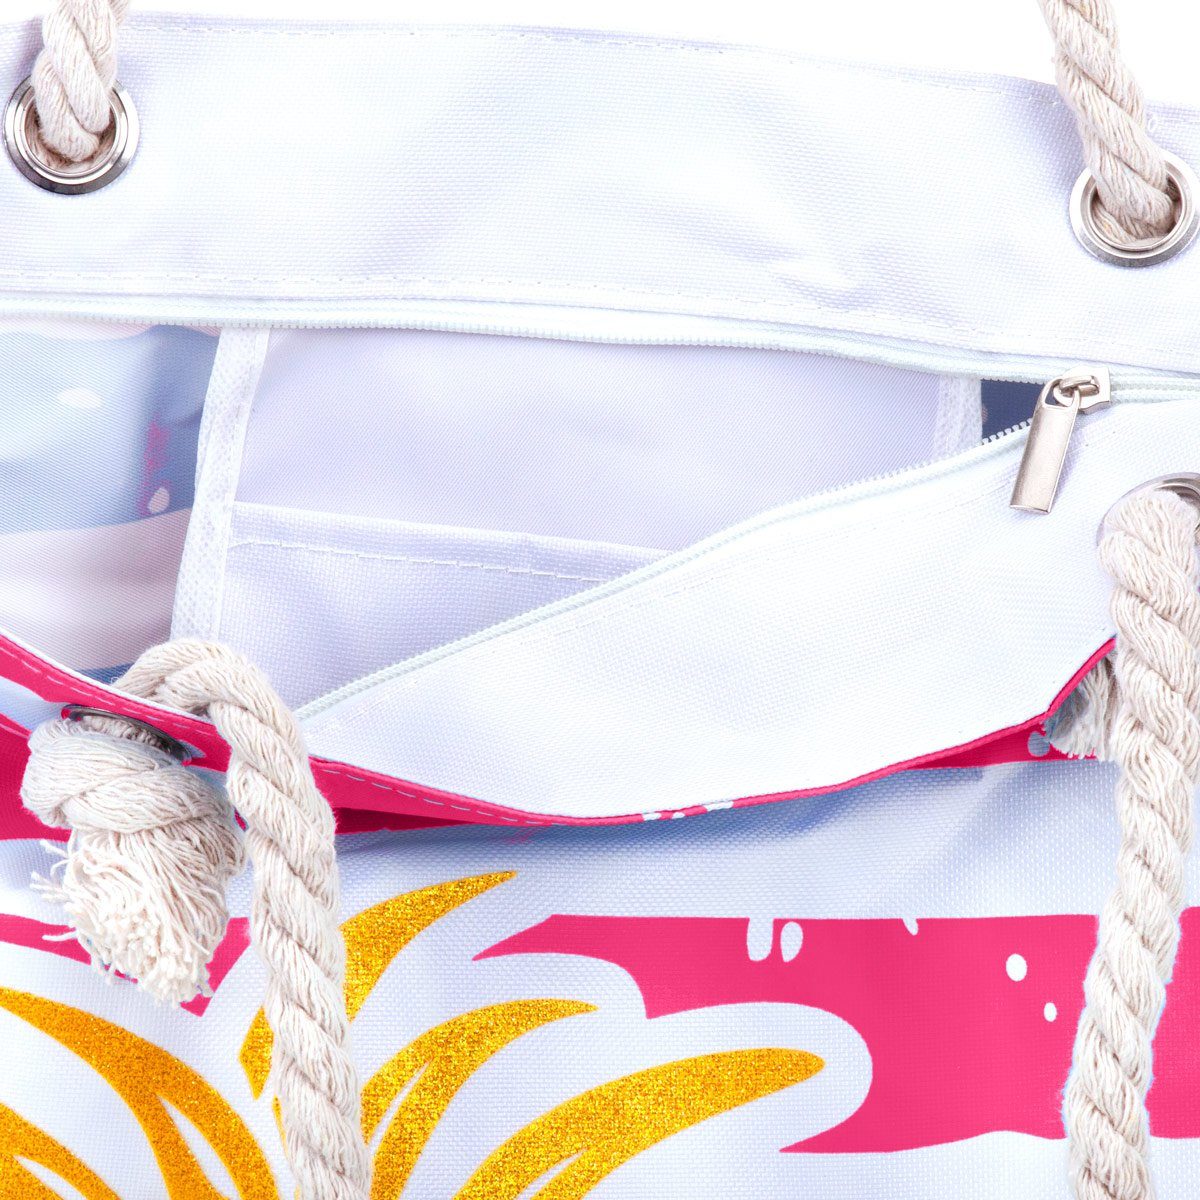 Bag XXL Ananas Shopper Strandtasche (1-tlg), mit Kordel Schultertasche Strandtasche Beach breiter compagno pink